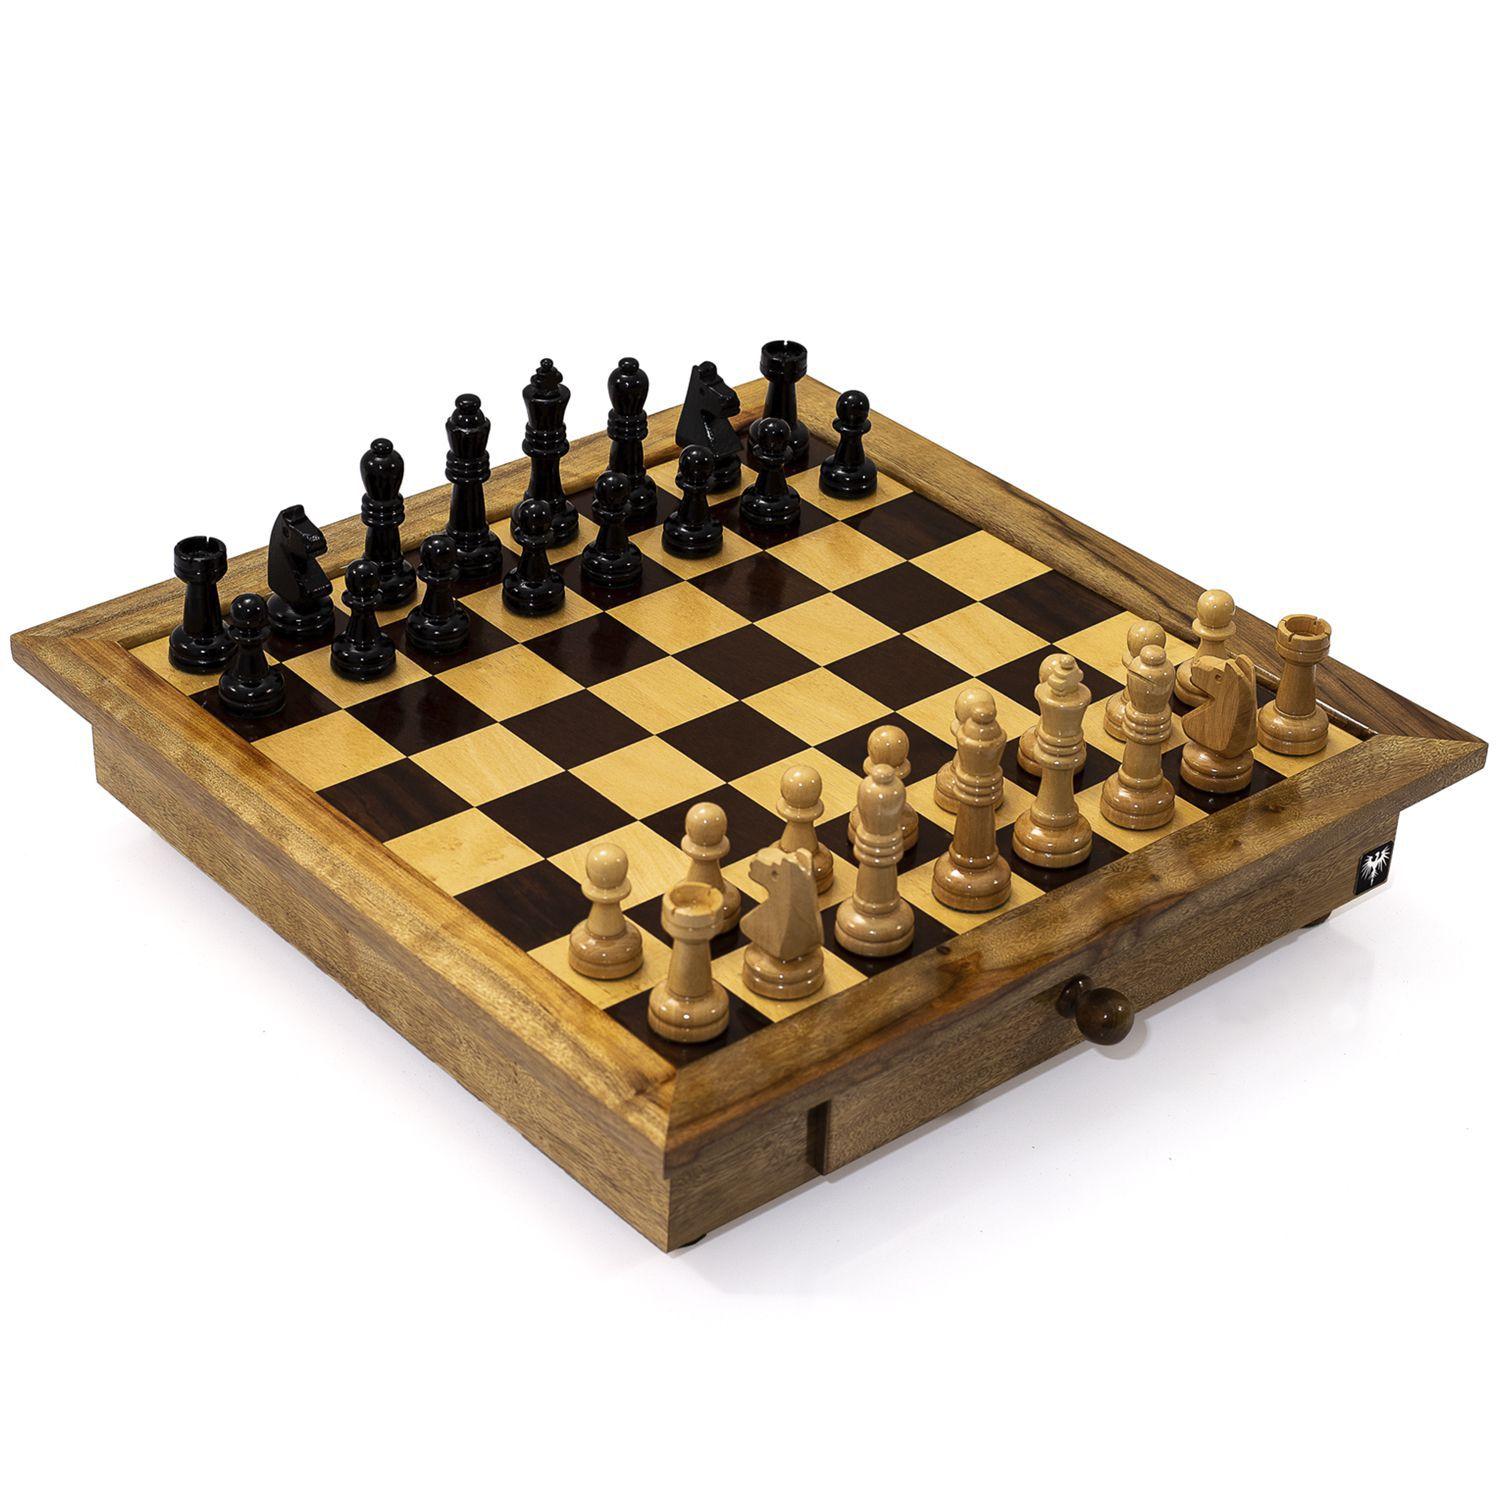 lifcasual Conjunto de tabuleiro de xadrez de madeira Jogo de